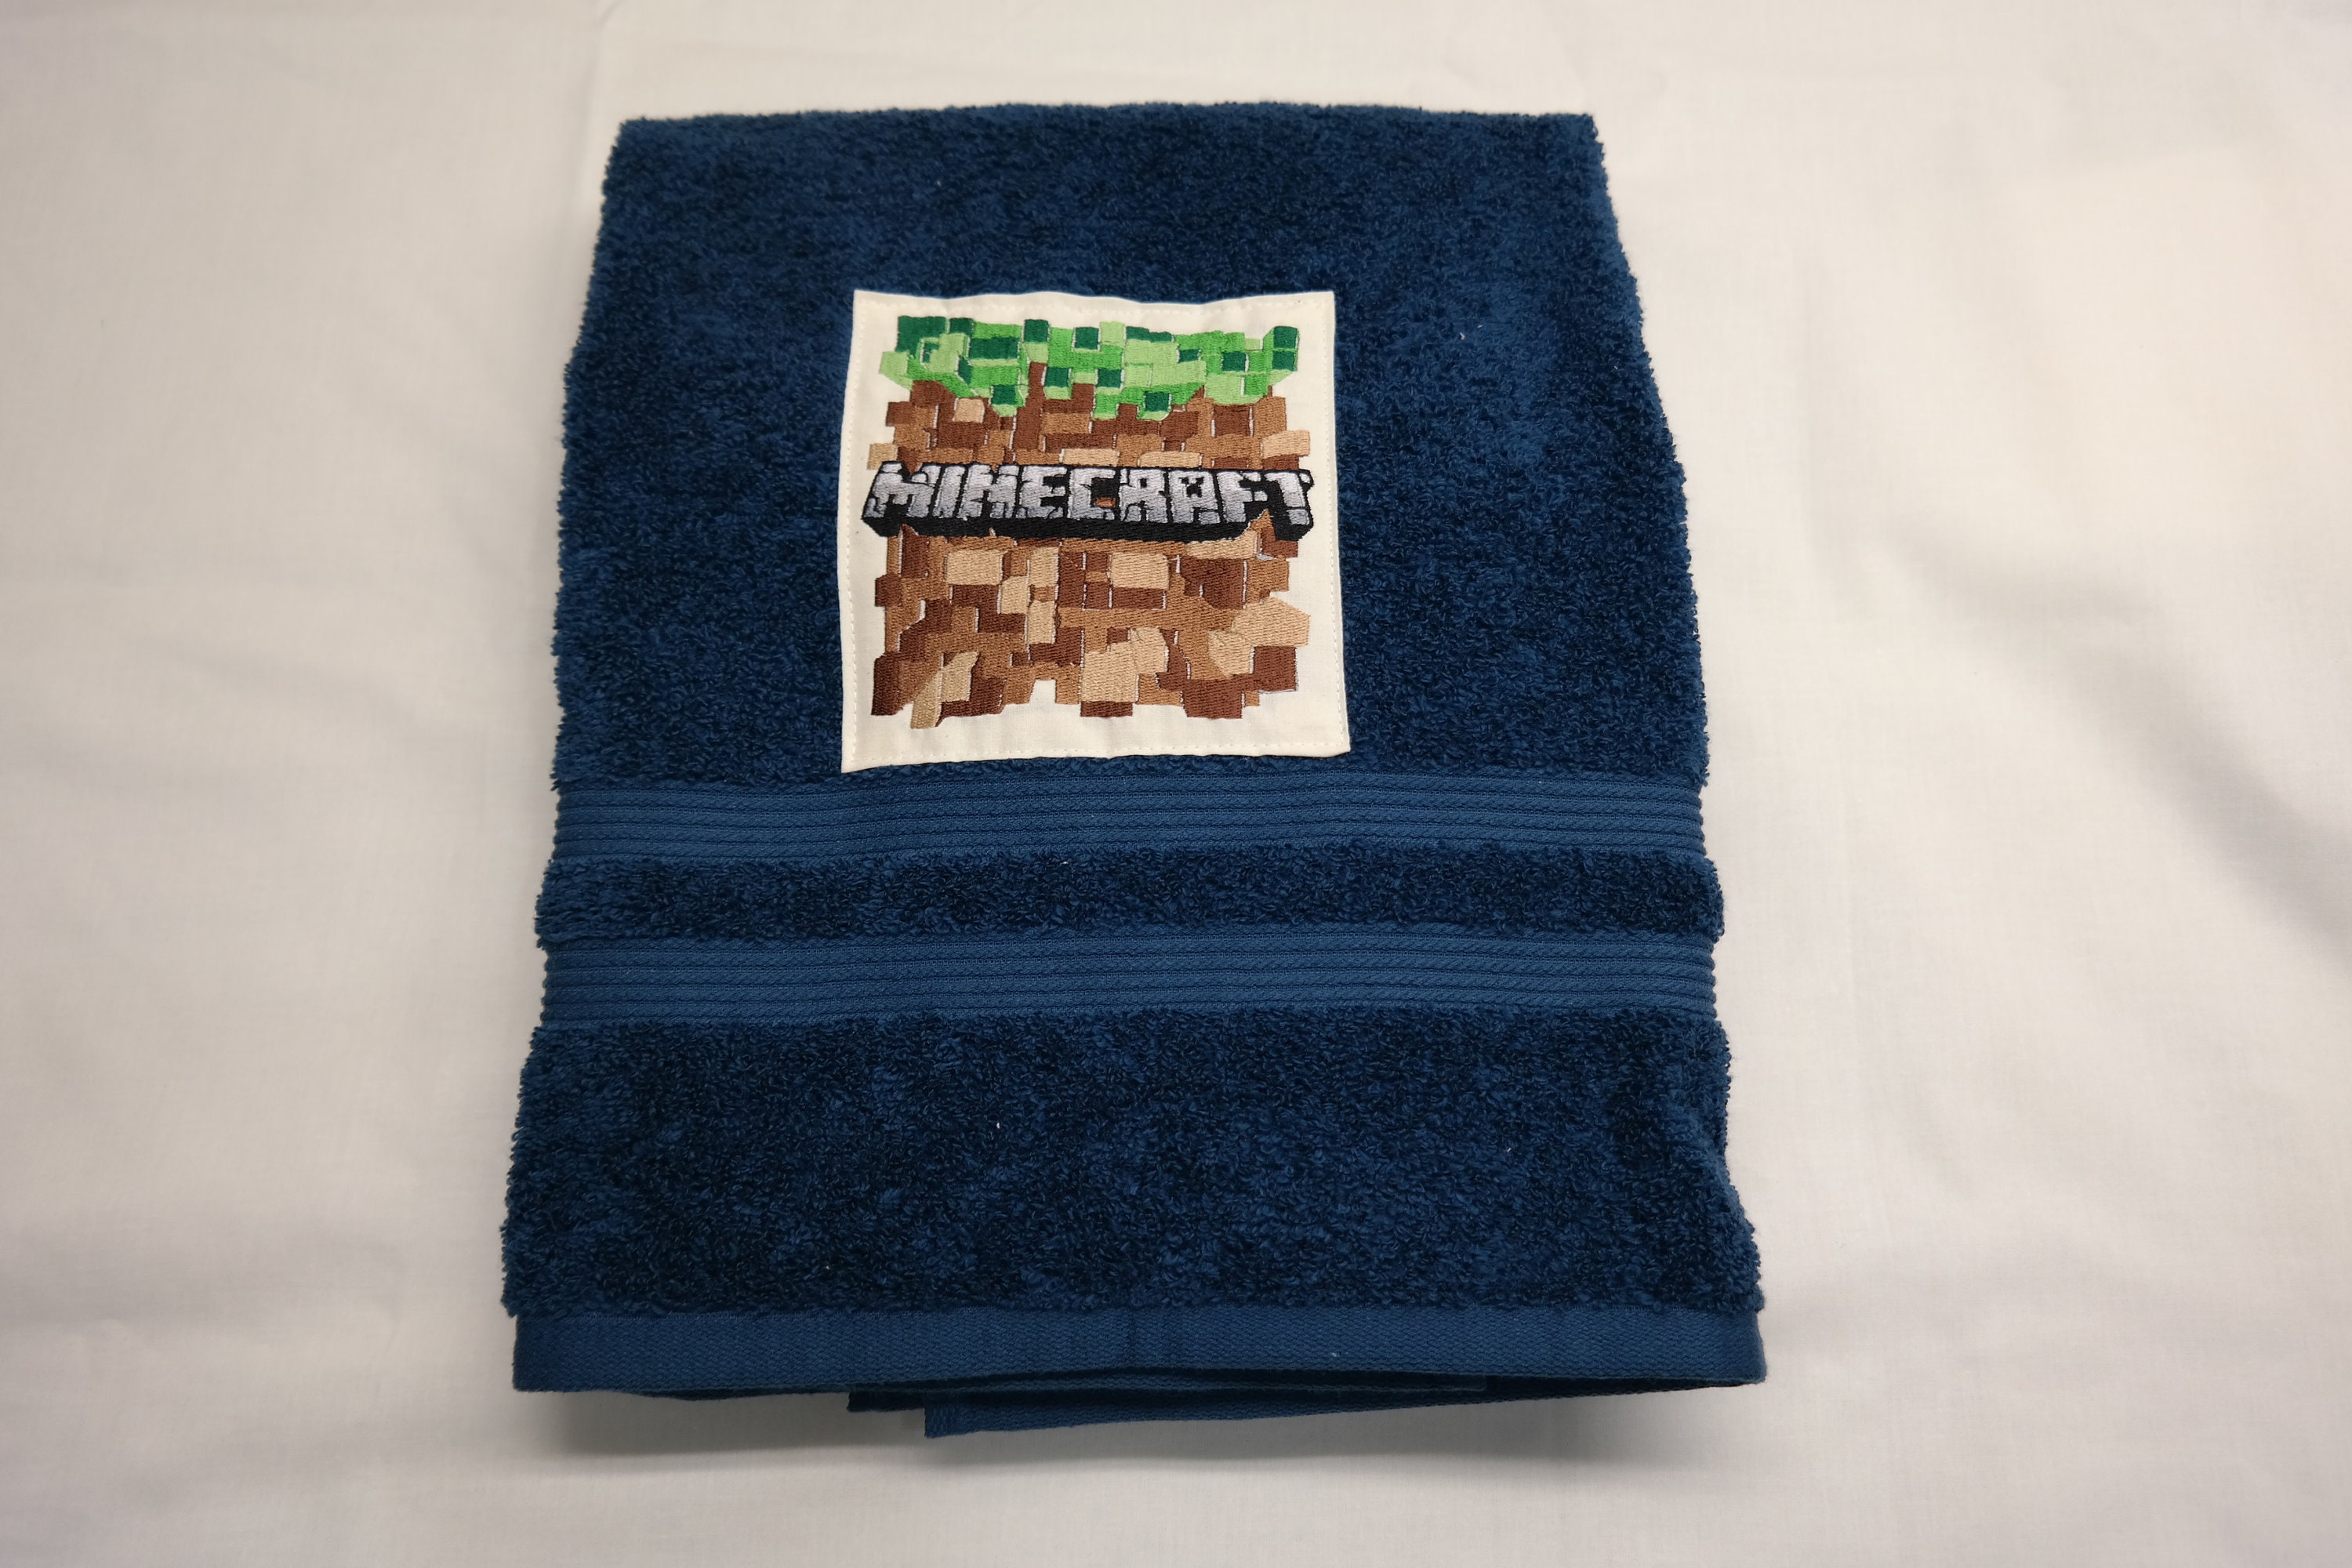 Nintentroll ( Version Small ) Bath Towel Beach Cushion Game Games